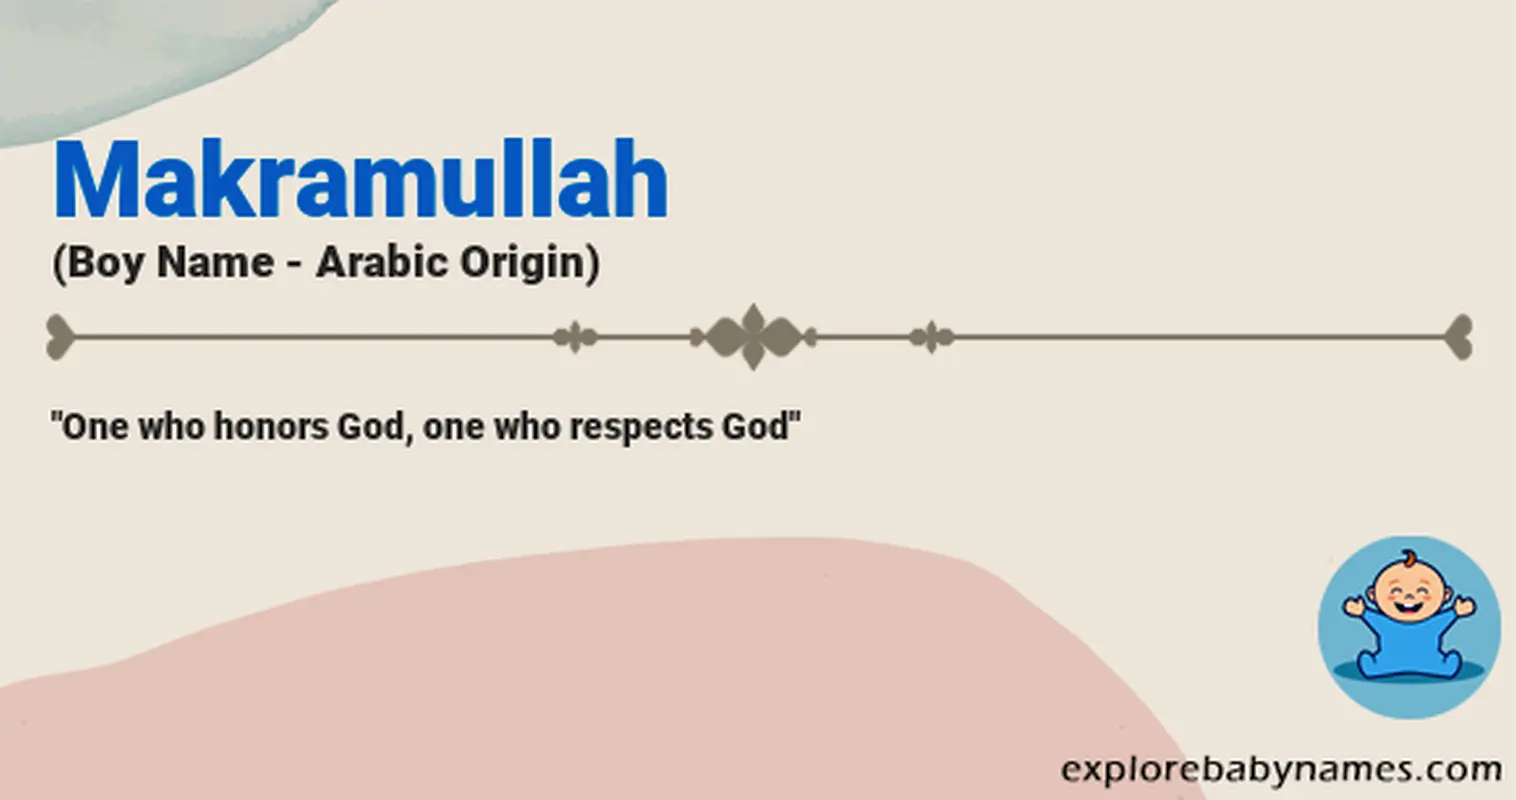 Meaning of Makramullah